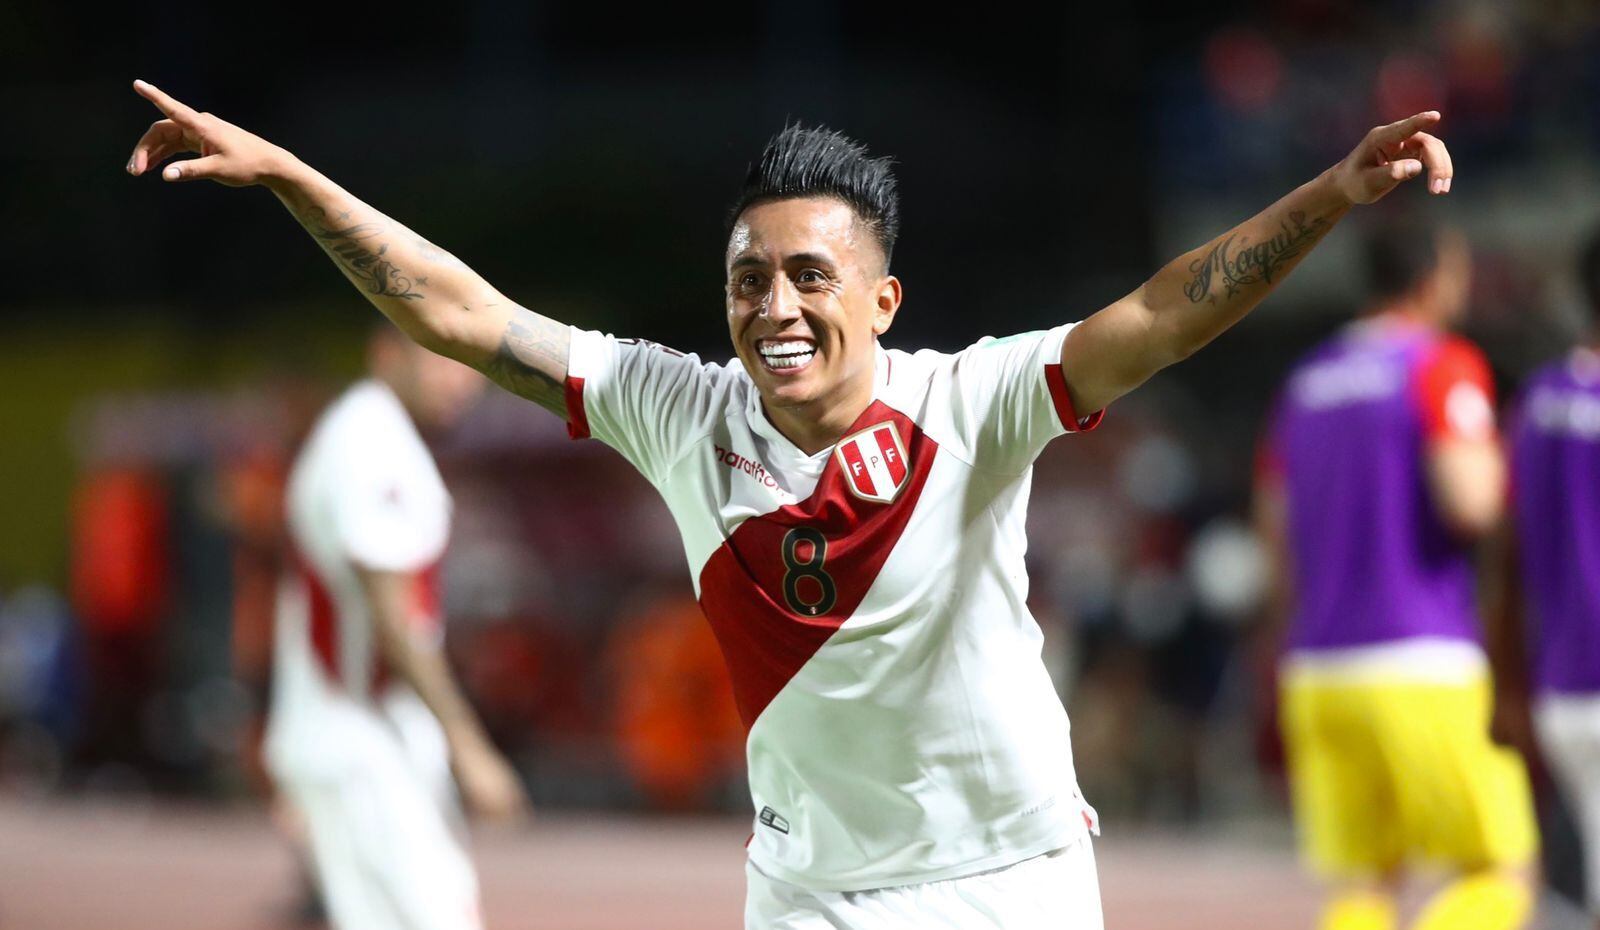 Selección peruana | Christian Cueva se refirió al posible grupo de Perú si clasifica al Mundial: “No lo tomaría como revancha” | RMMD | FUTBOL-PERUANO